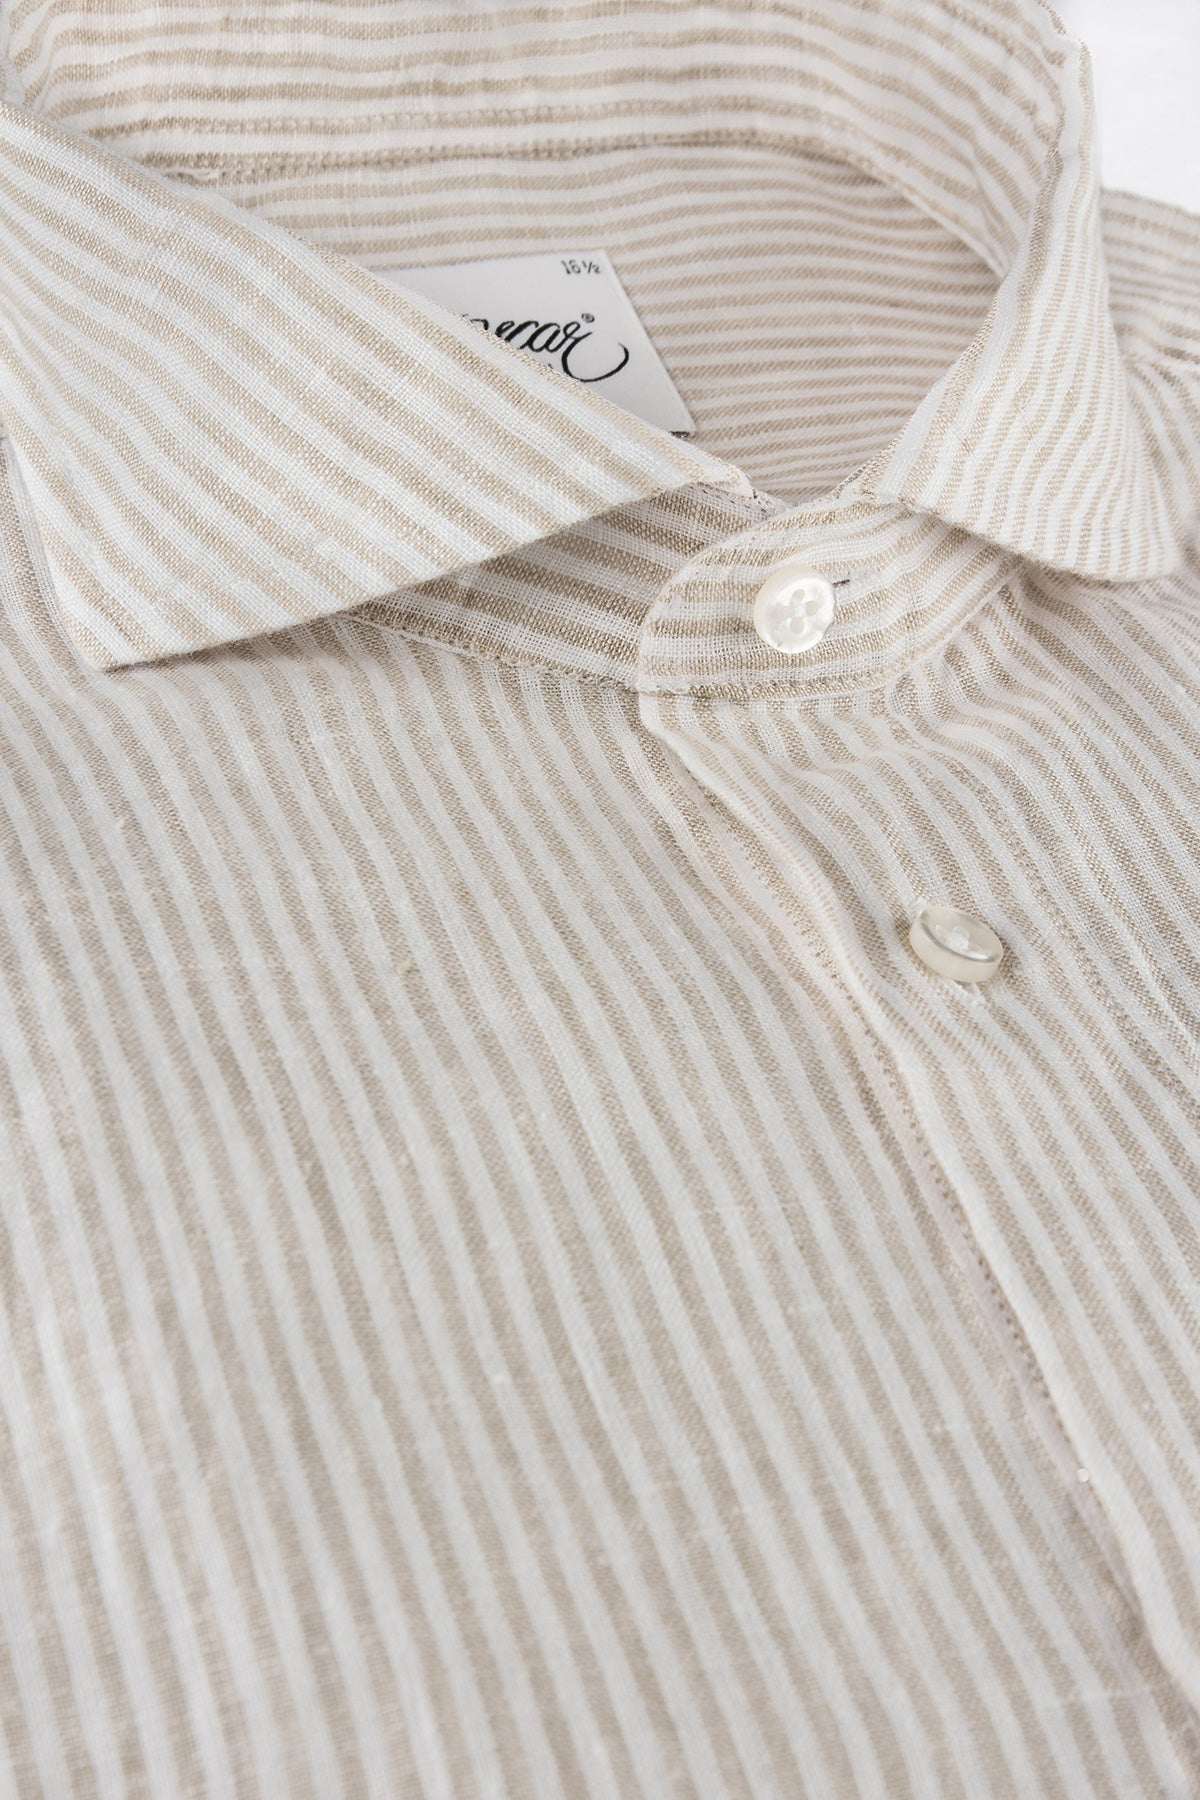 Beige striped linen short sleeve regular fit shirt